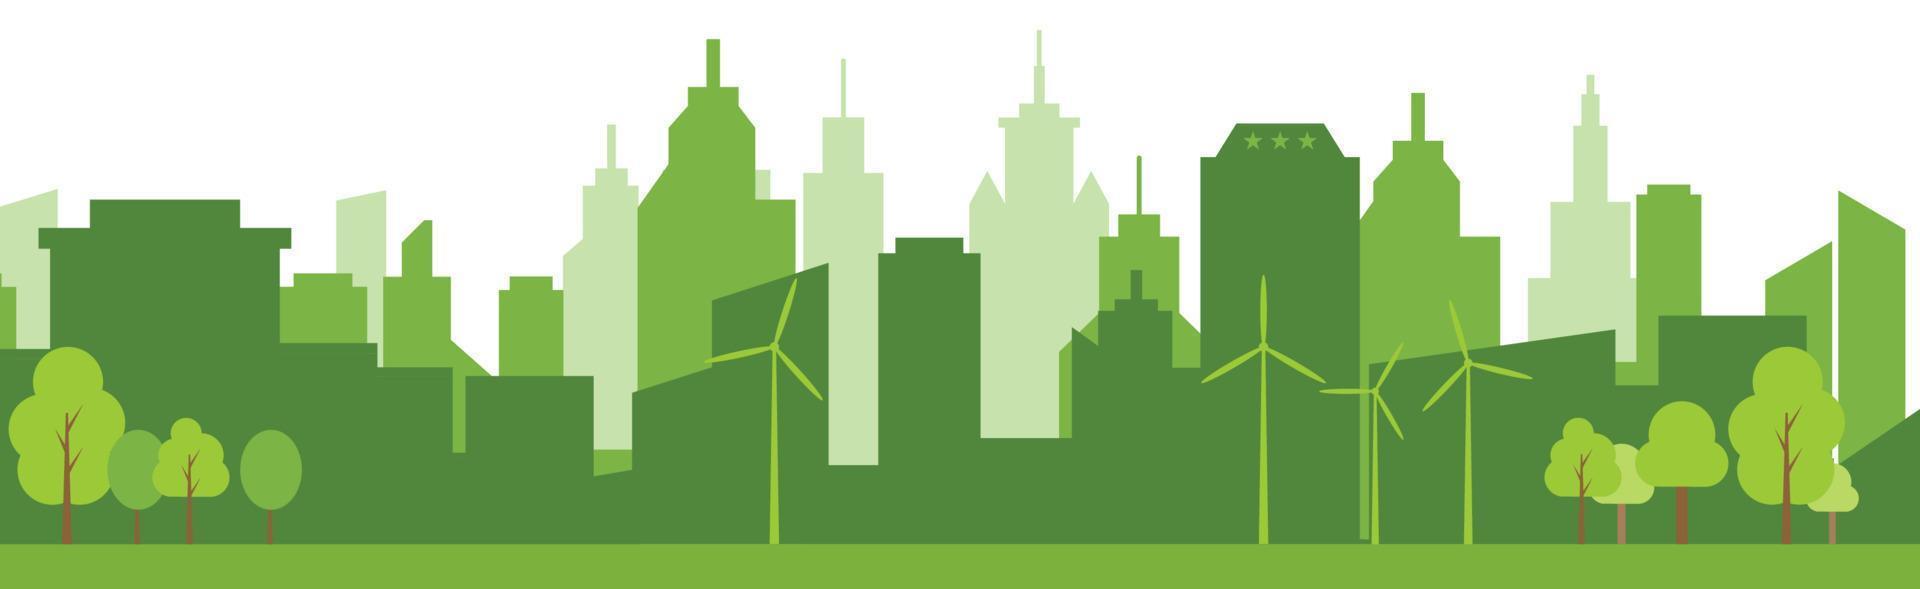 vert villes Aidez-moi le monde avec respectueux de la nature concept idées.vecteur illustration. vecteur